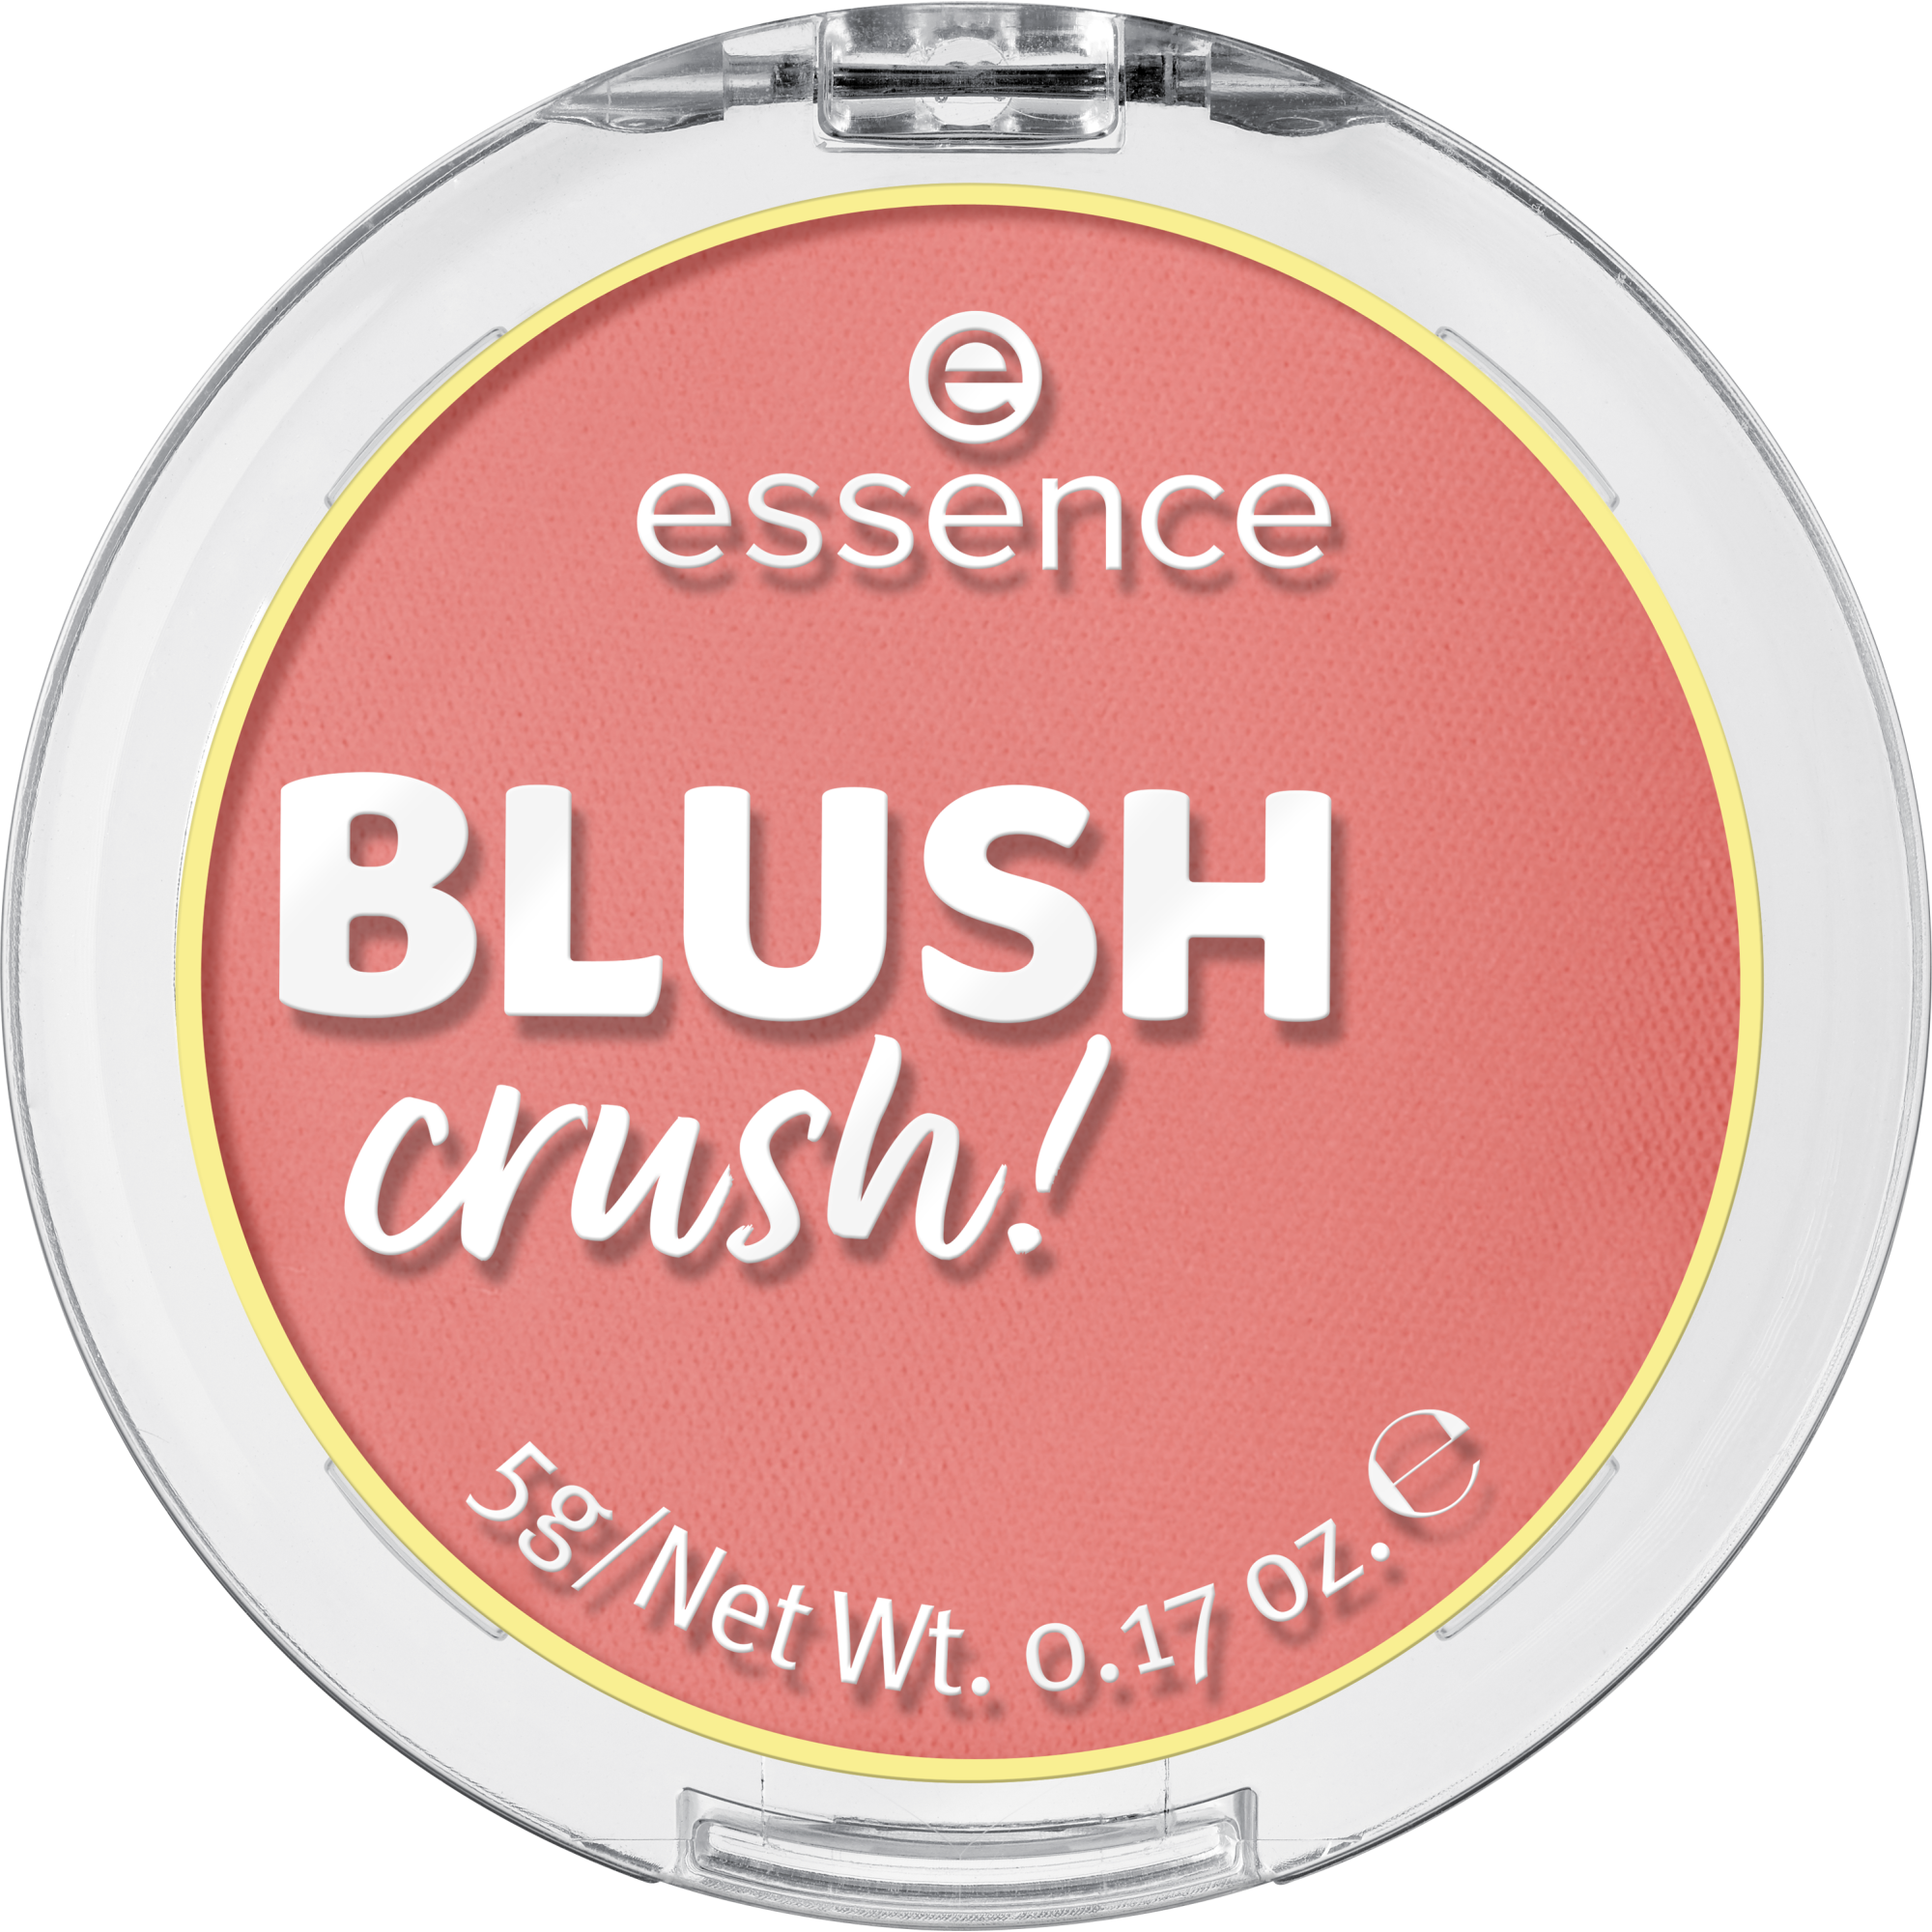 ¡BLUSH crush!